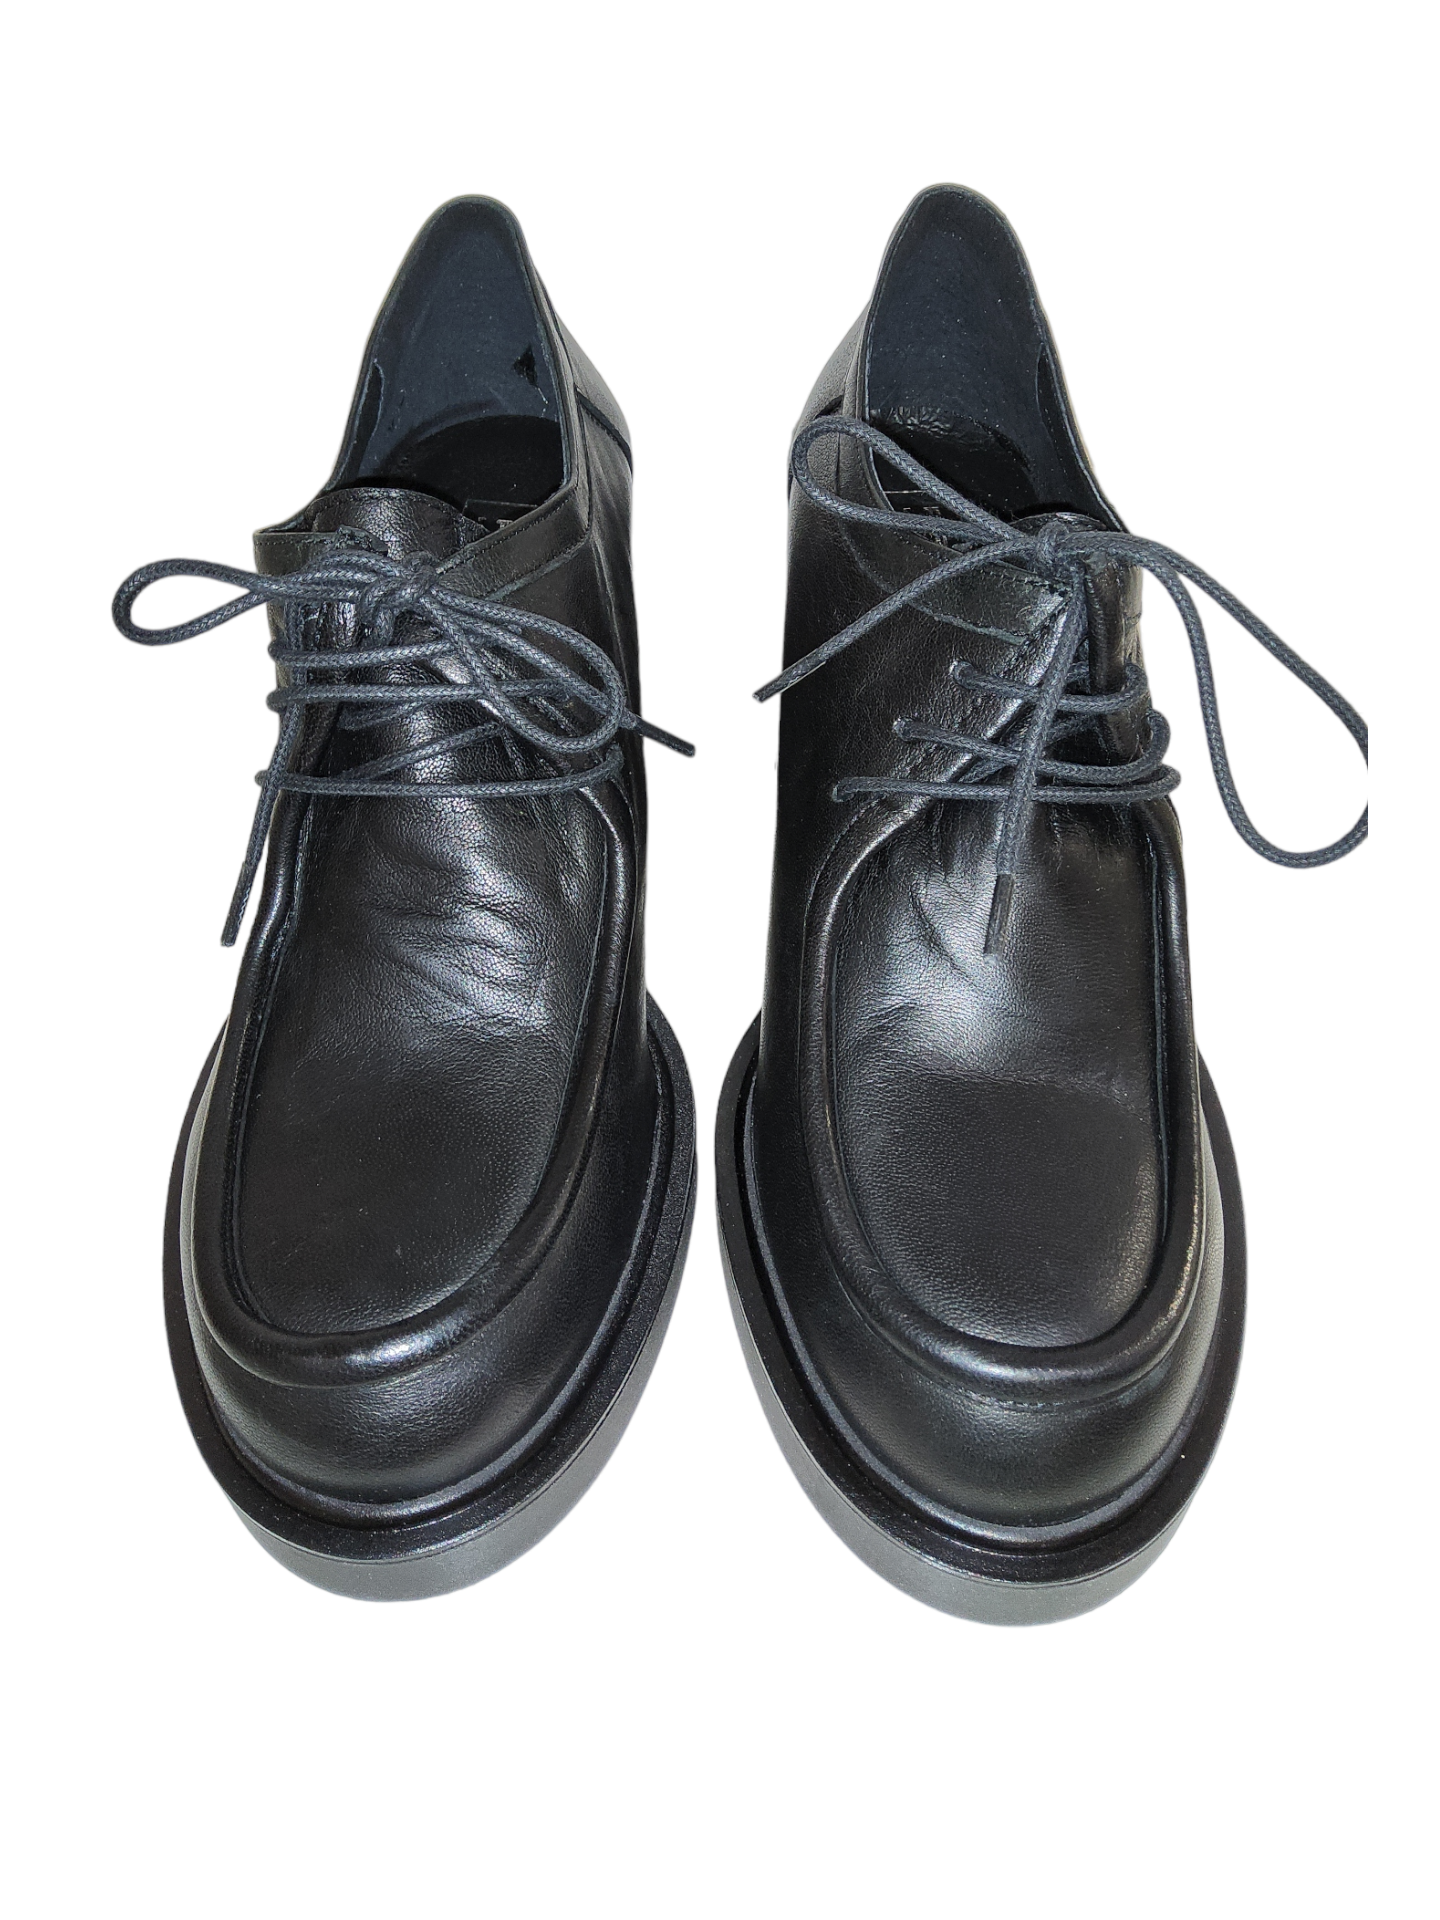 Black leather platform shoe